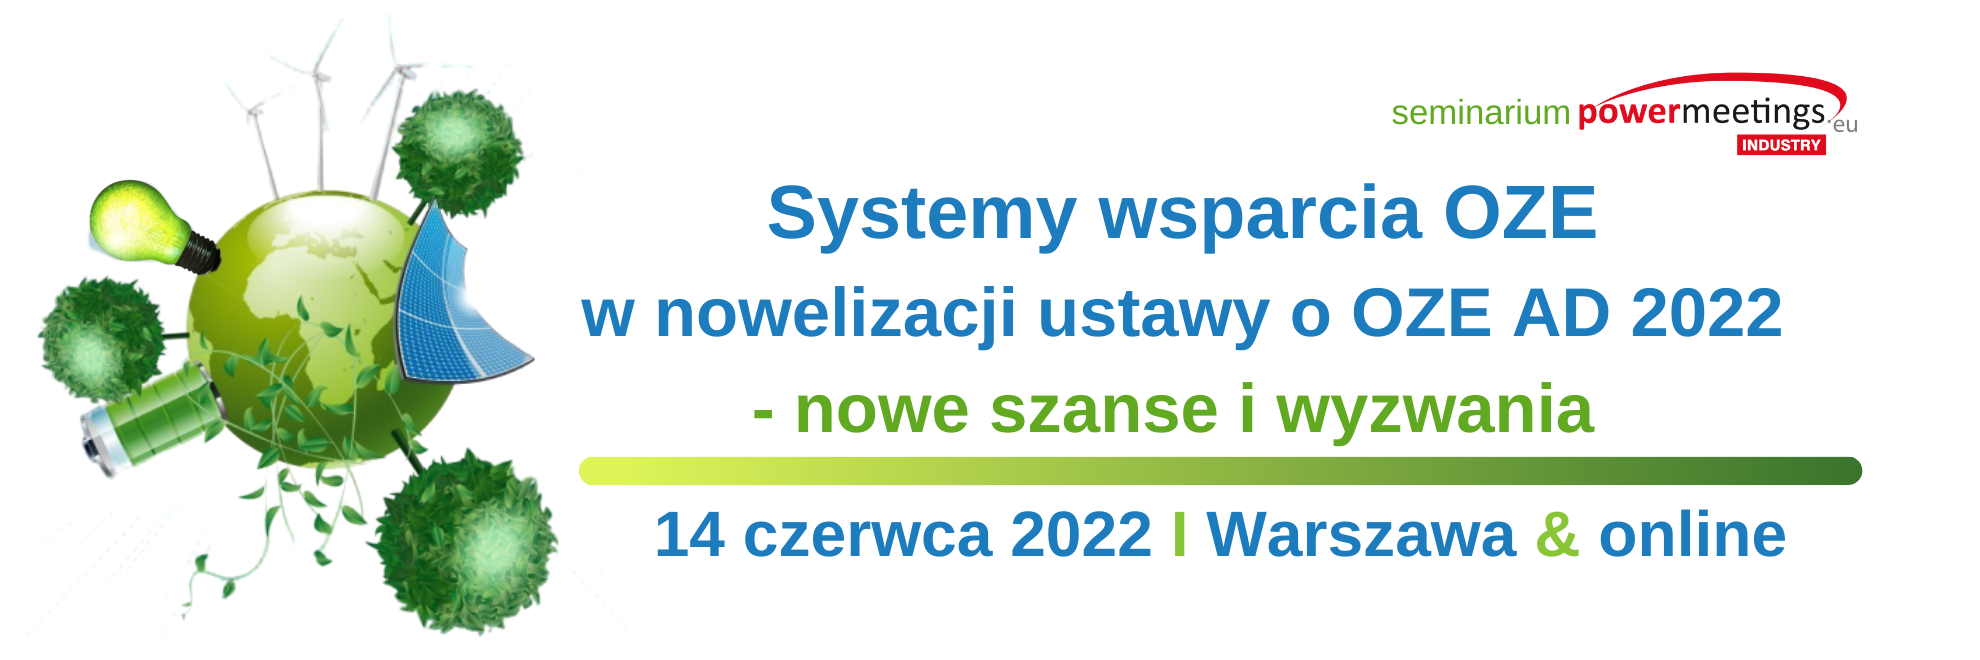 Systemy wsparcia w nowelizacji ustawy o OZE A.D. 2022